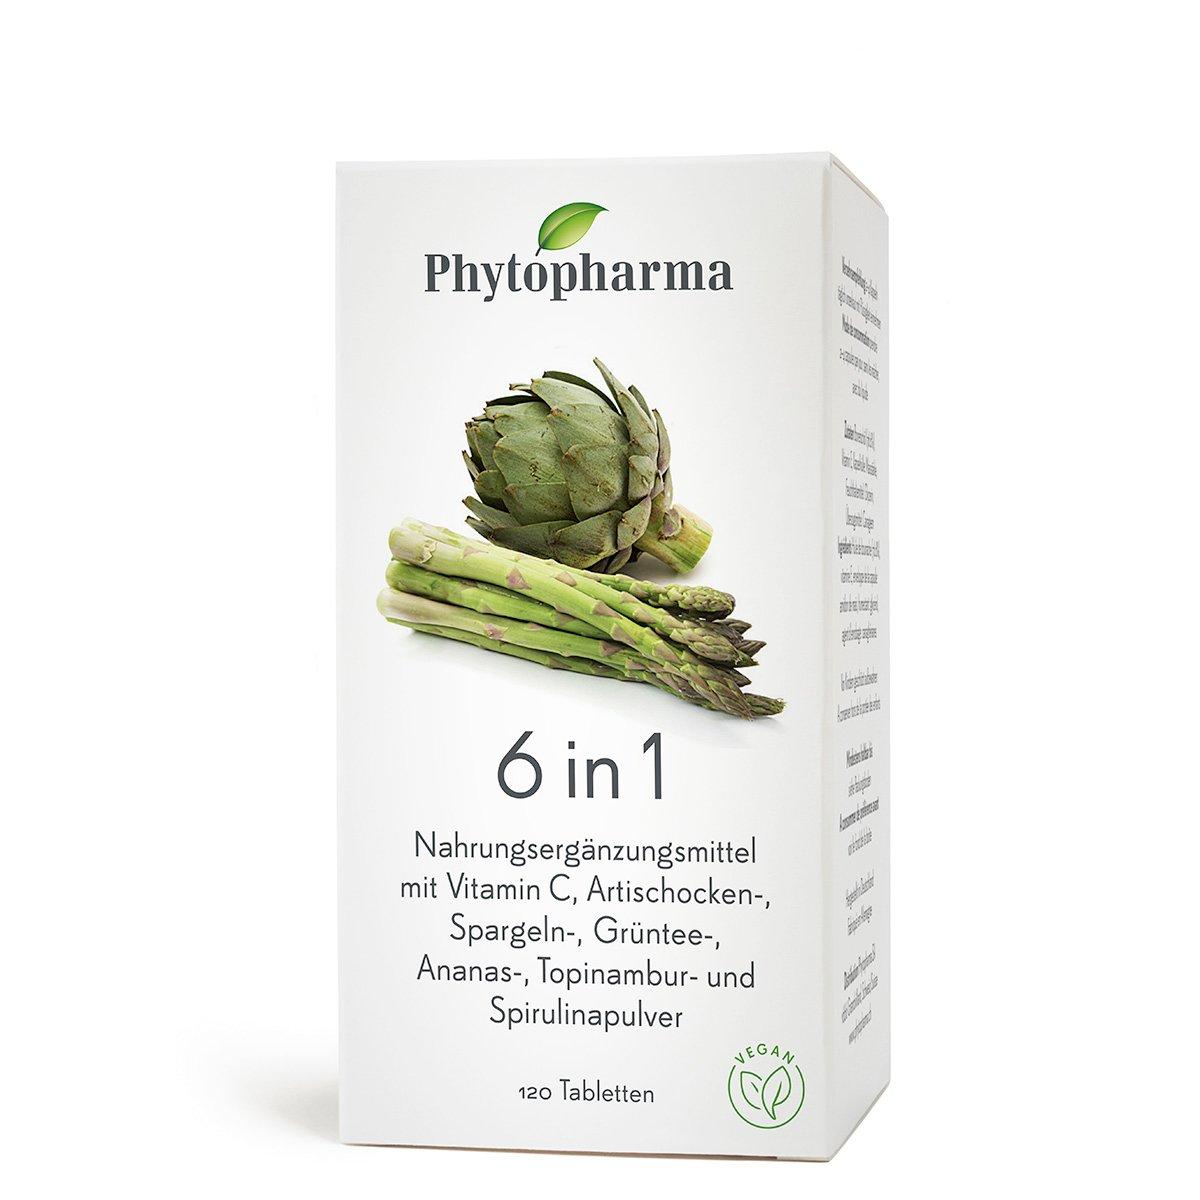 Image of Phytopharma 6in1 Tabletten - Nahrungsergänzungsmittel - 20Stück